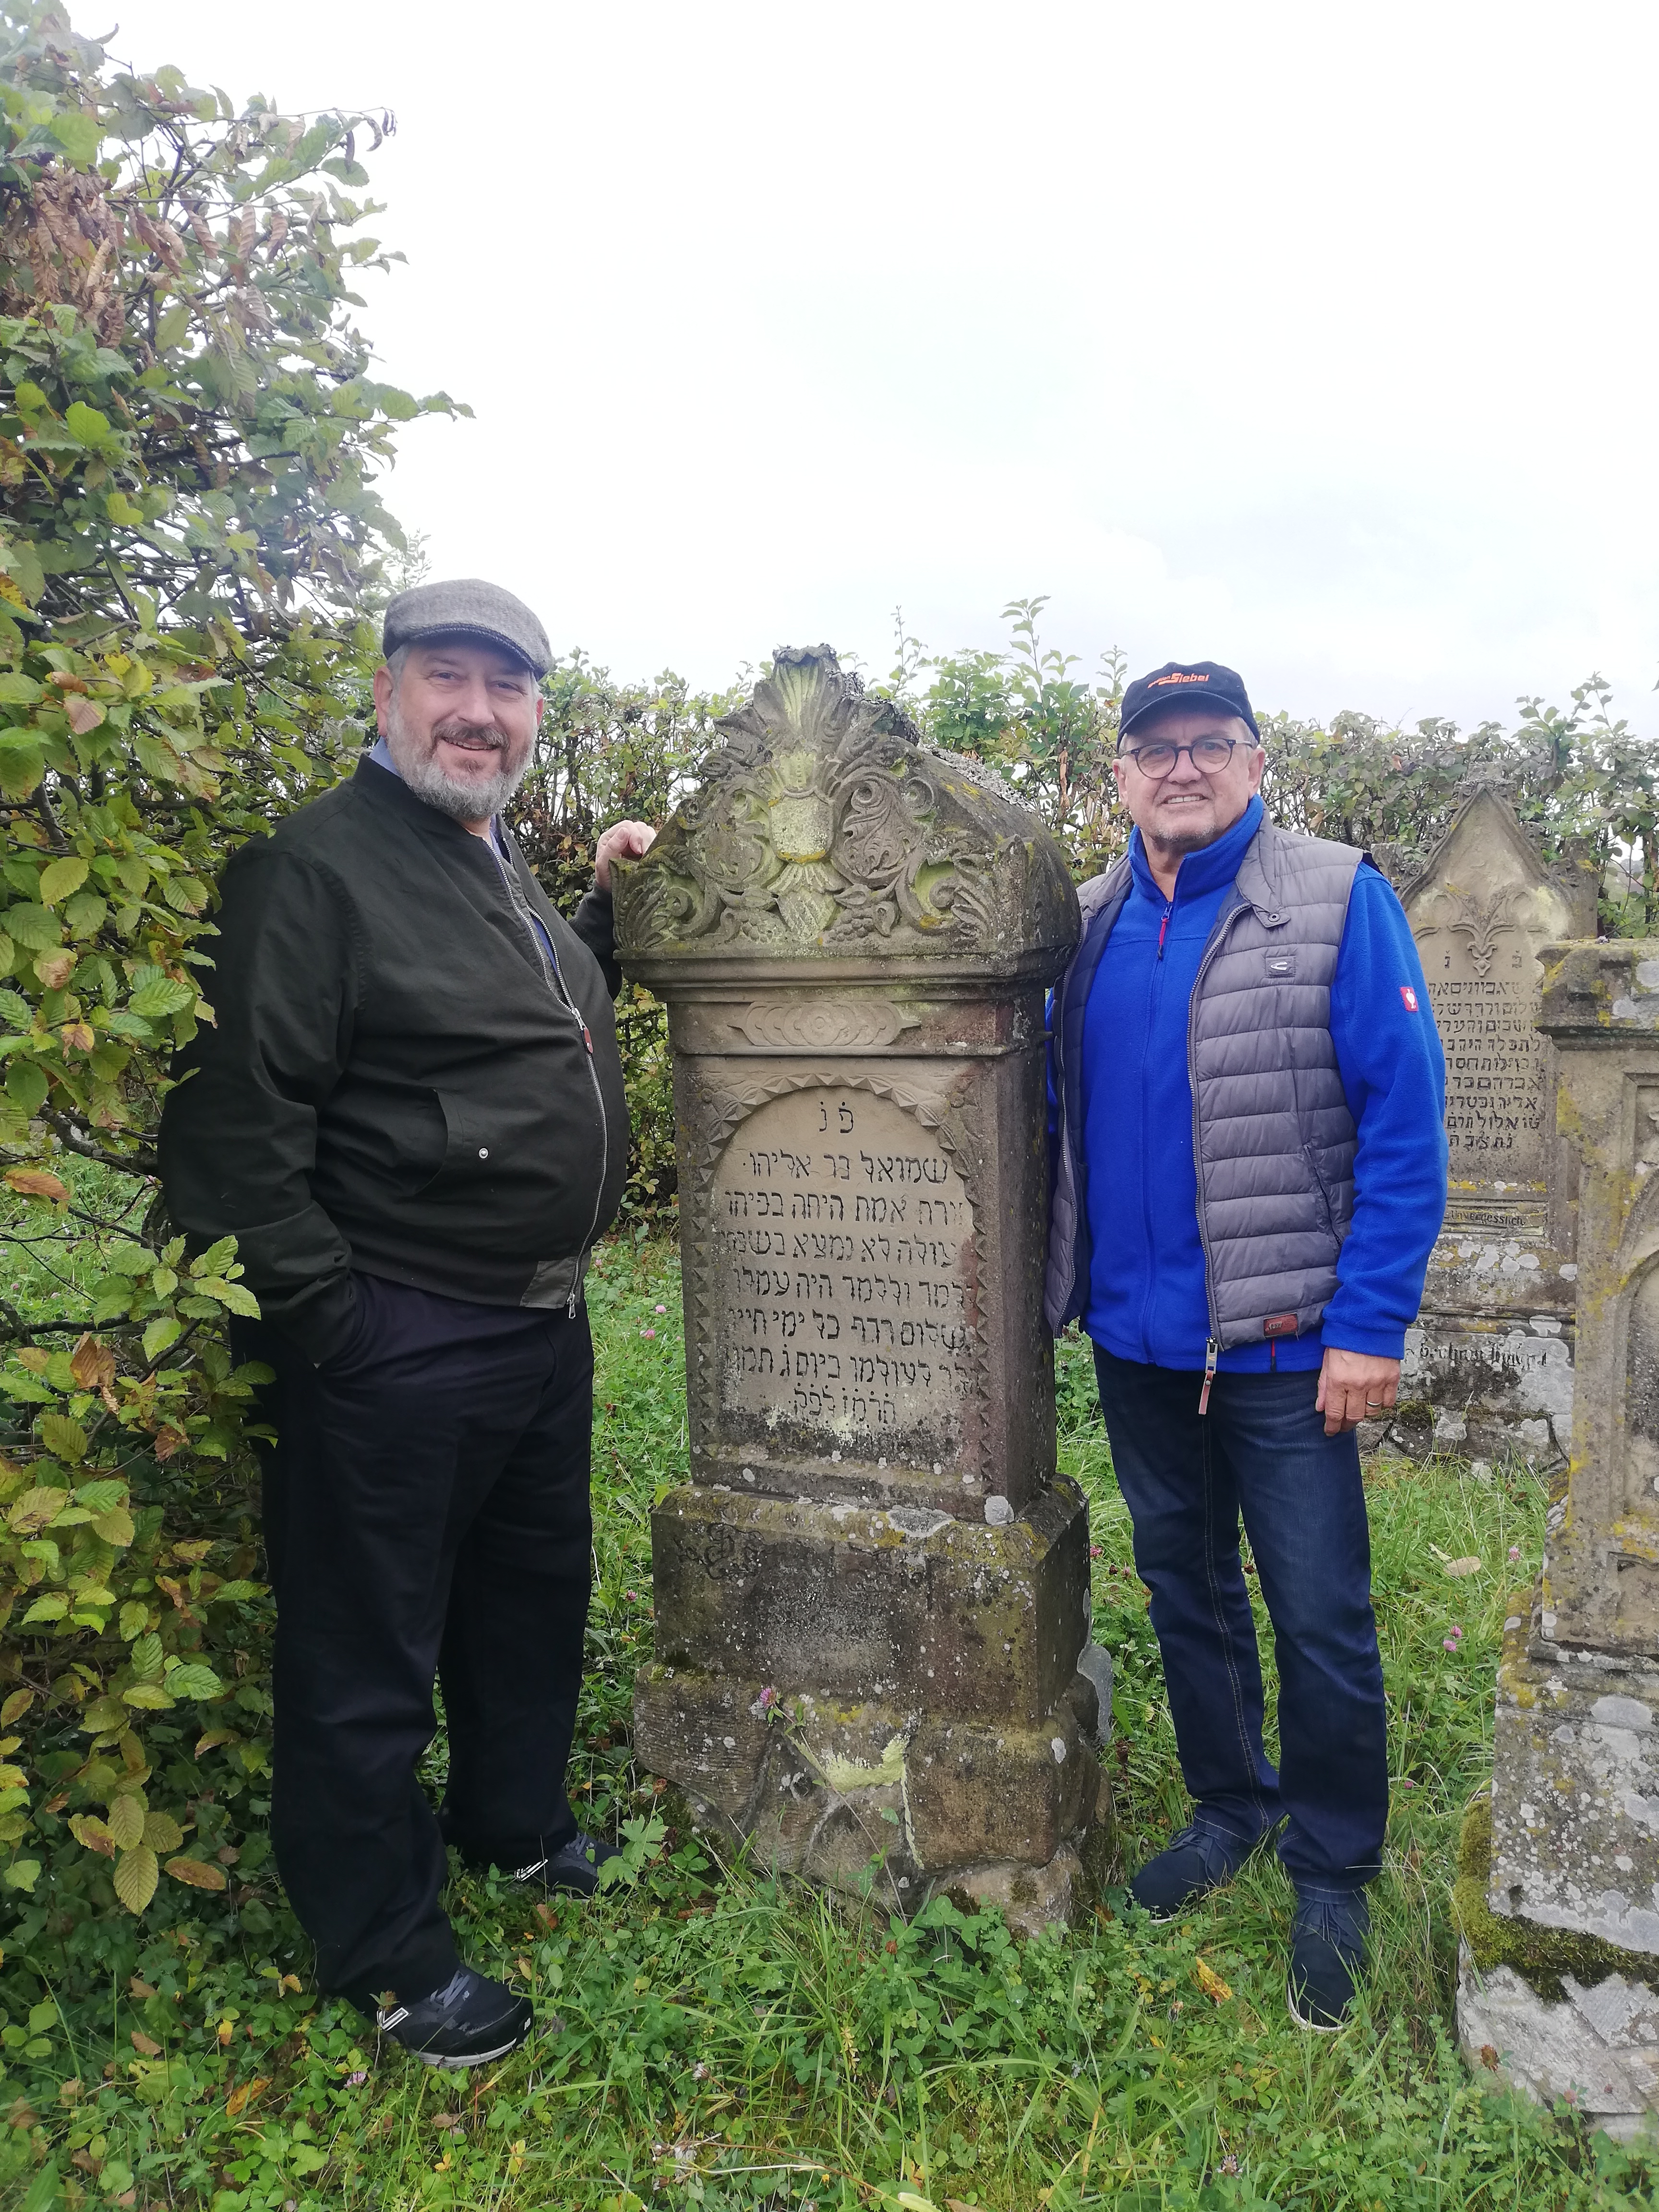  Allan Ries mit Dr. Joachim Hartmann am Grabstein seiner Vorfahren. - Das Bild wird mit Klick vergrößert 